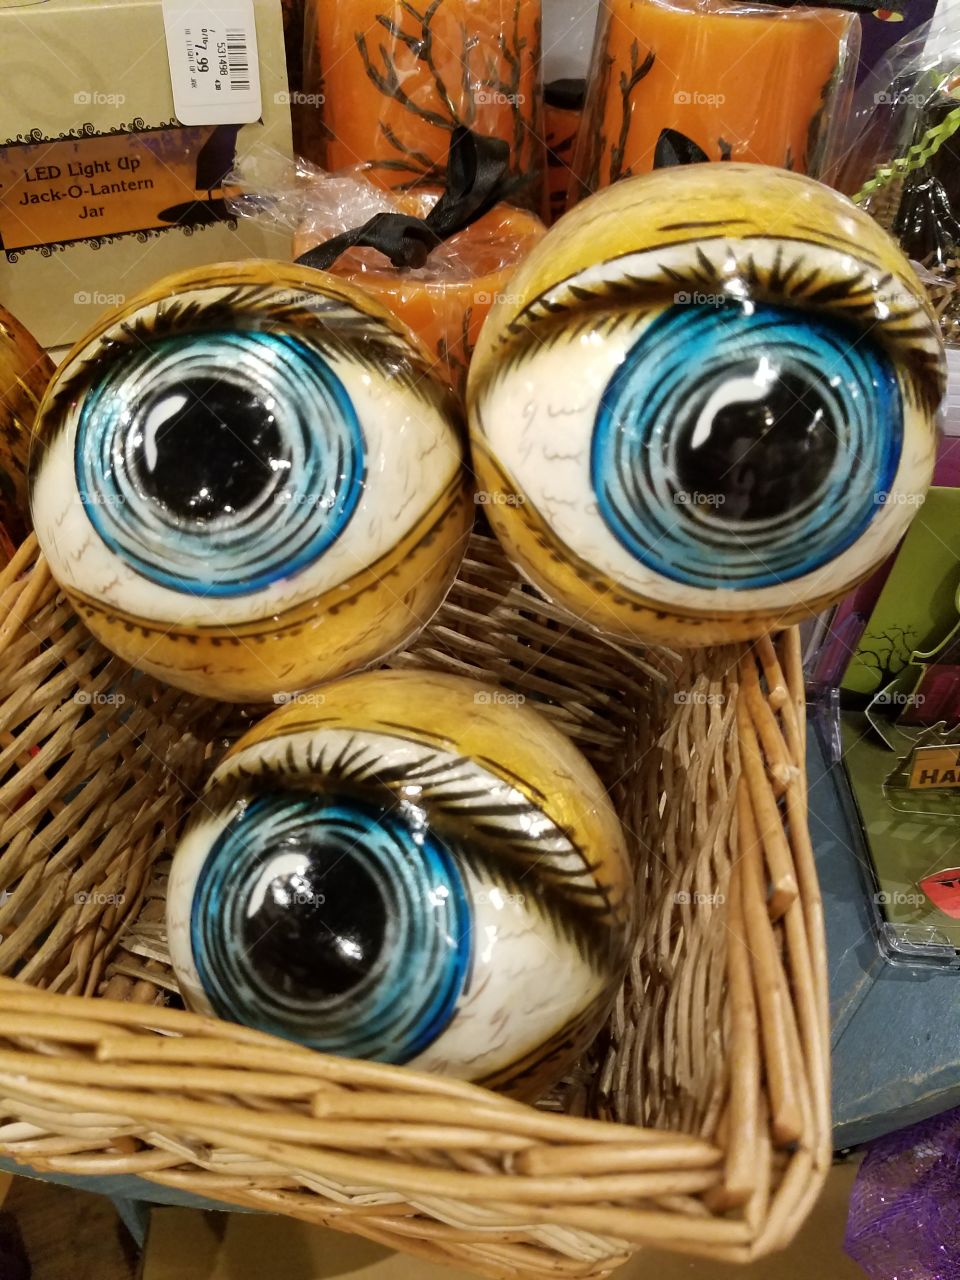 Got my Eyes on you!